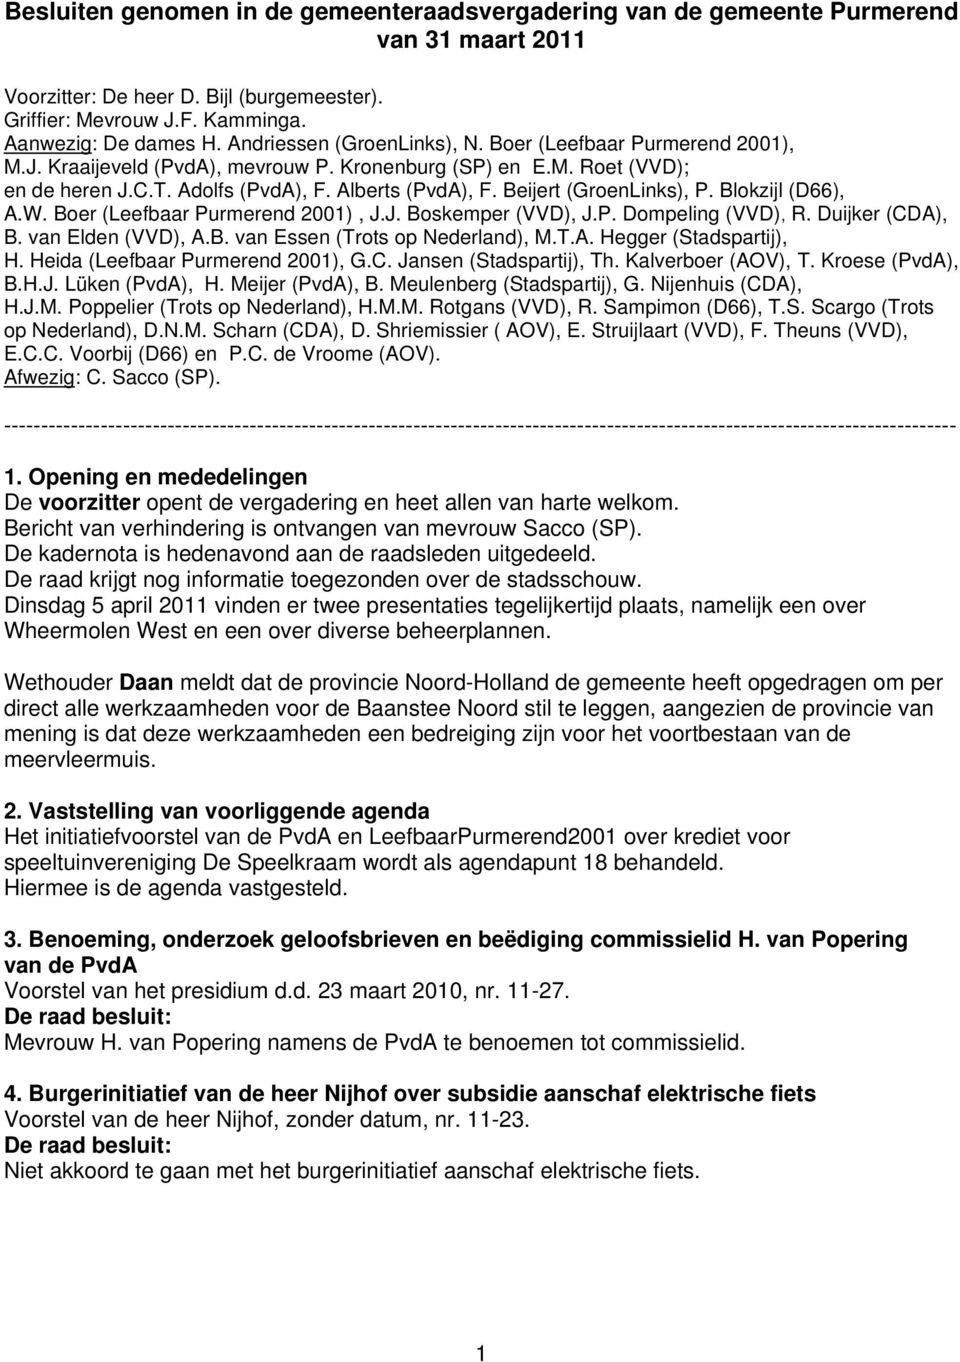 Beijert (GroenLinks), P. Blokzijl (D66), A.W. Boer (Leefbaar Purmerend 2001), J.J. Boskemper (VVD), J.P. Dompeling (VVD), R. Duijker (CDA), B. van Elden (VVD), A.B. van Essen (Trots op Nederland), M.